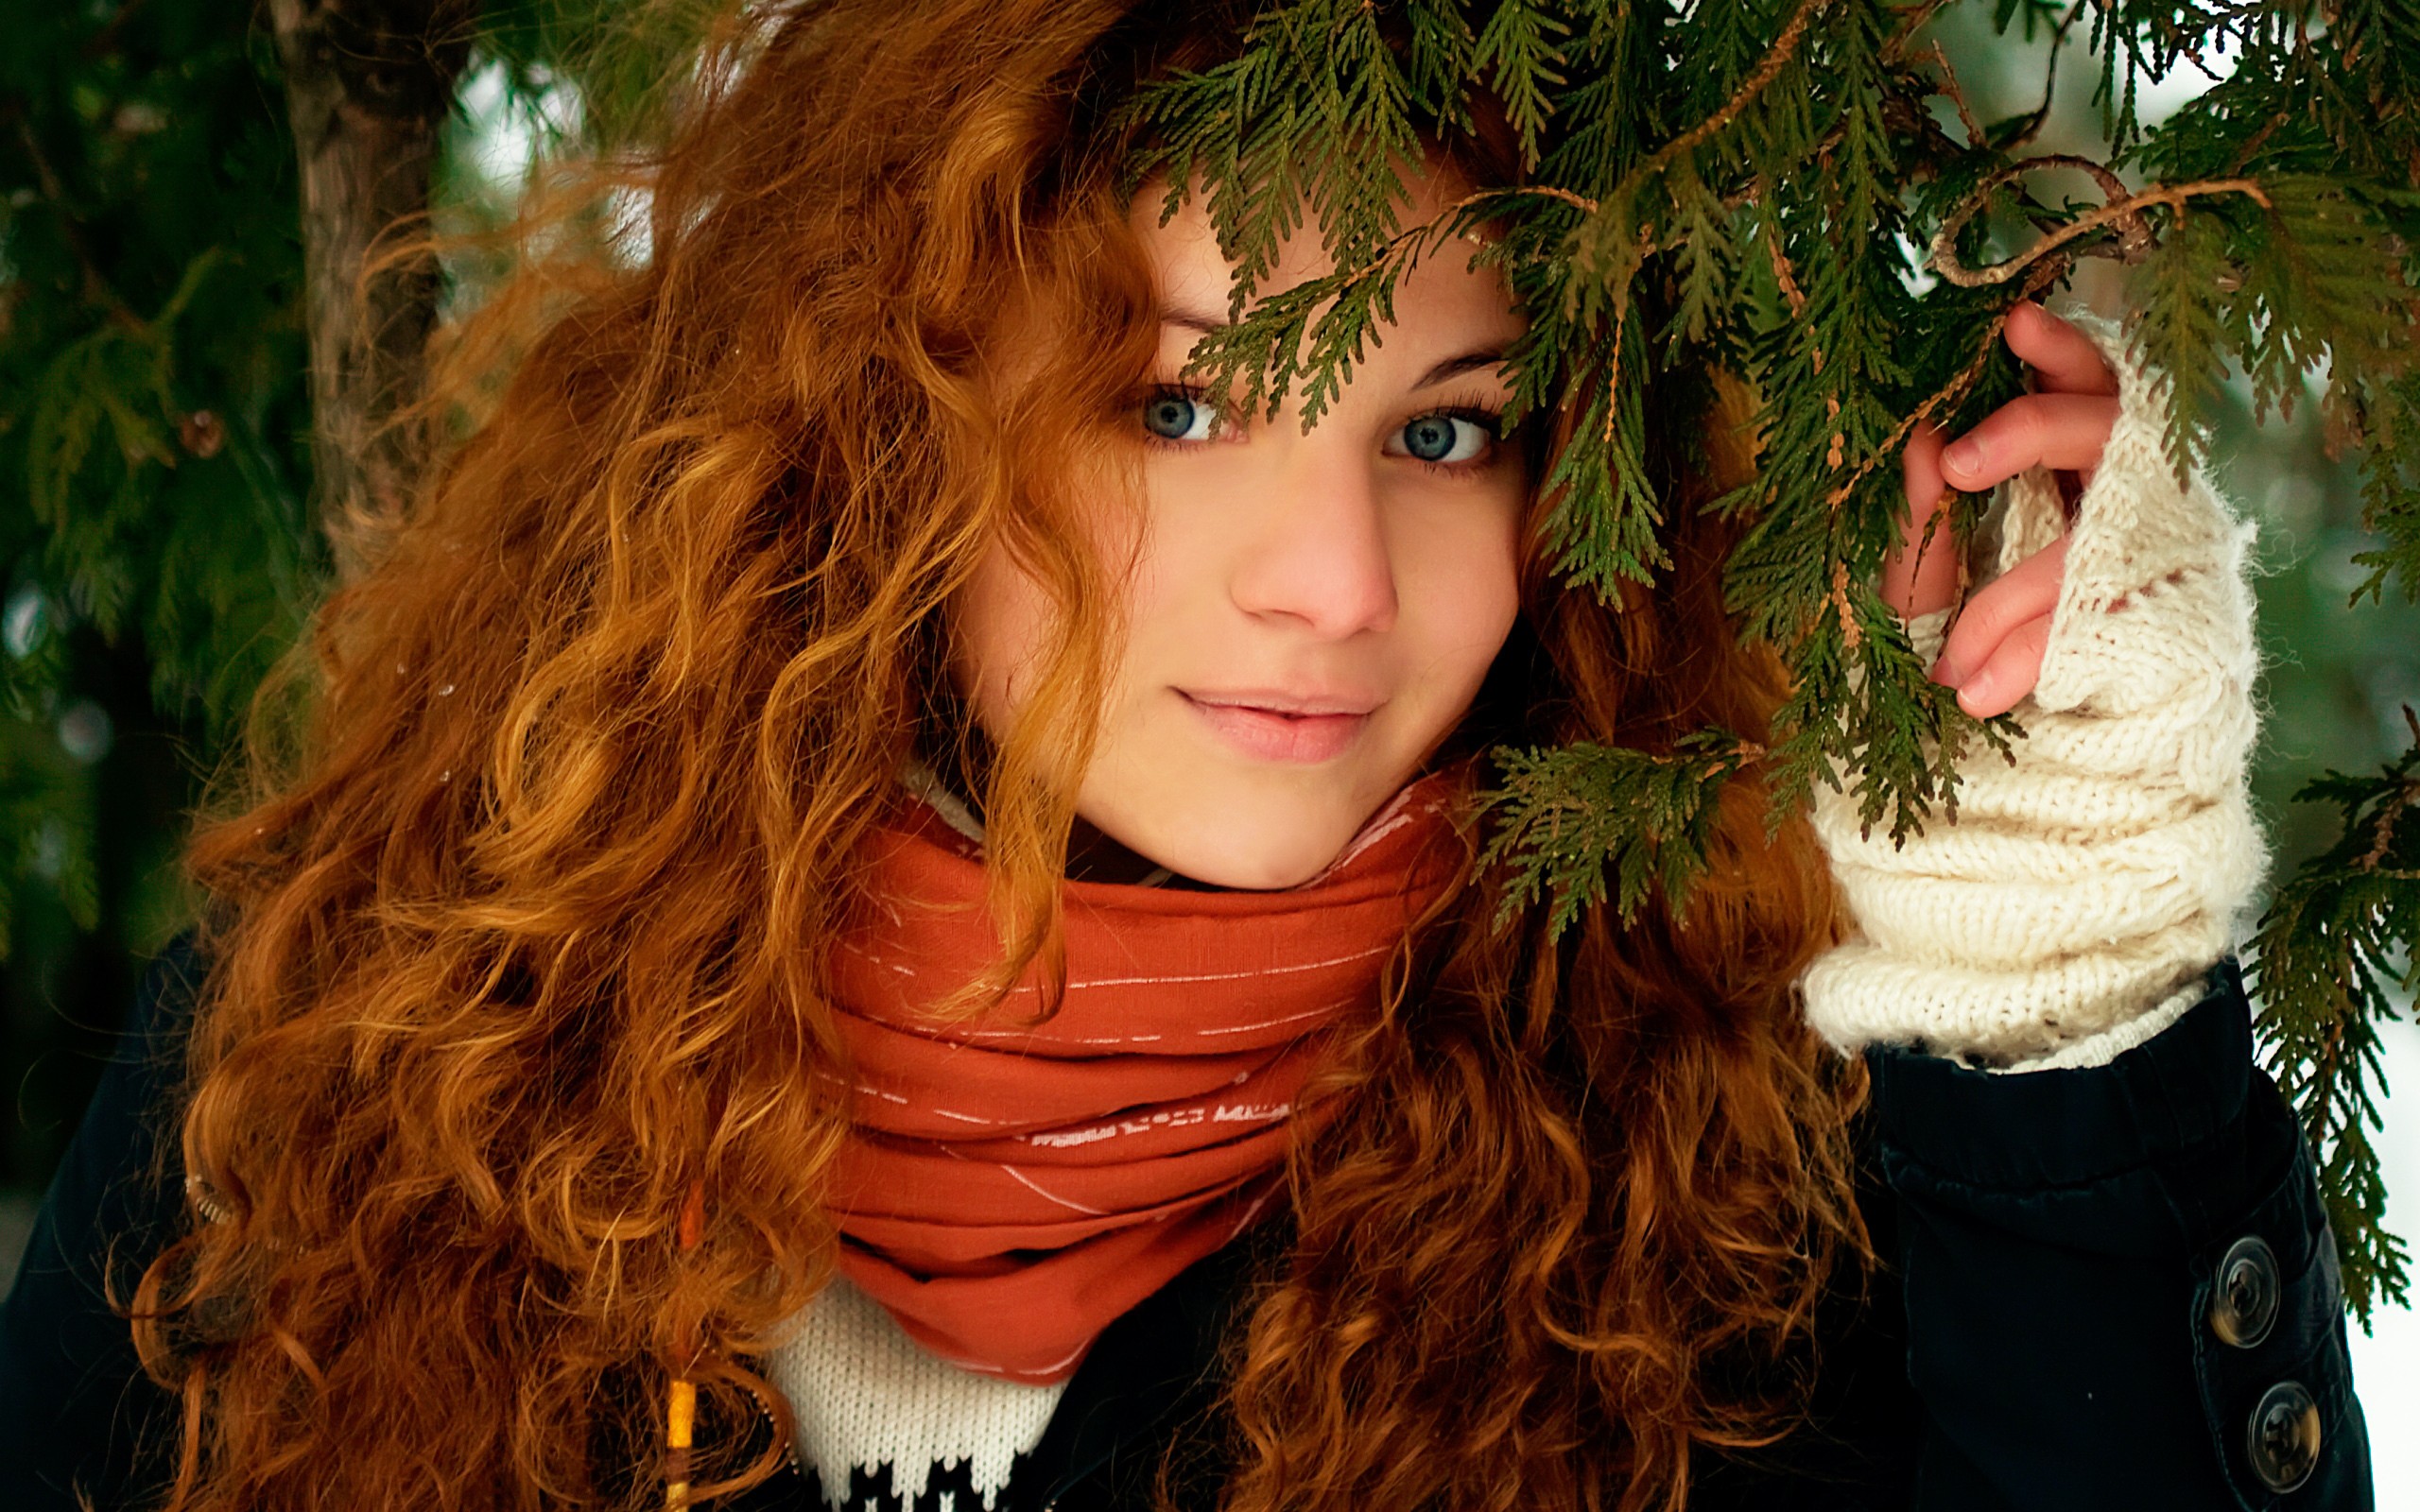 Wallpaper : face, trees, women outdoors, redhead, model, portrait ...